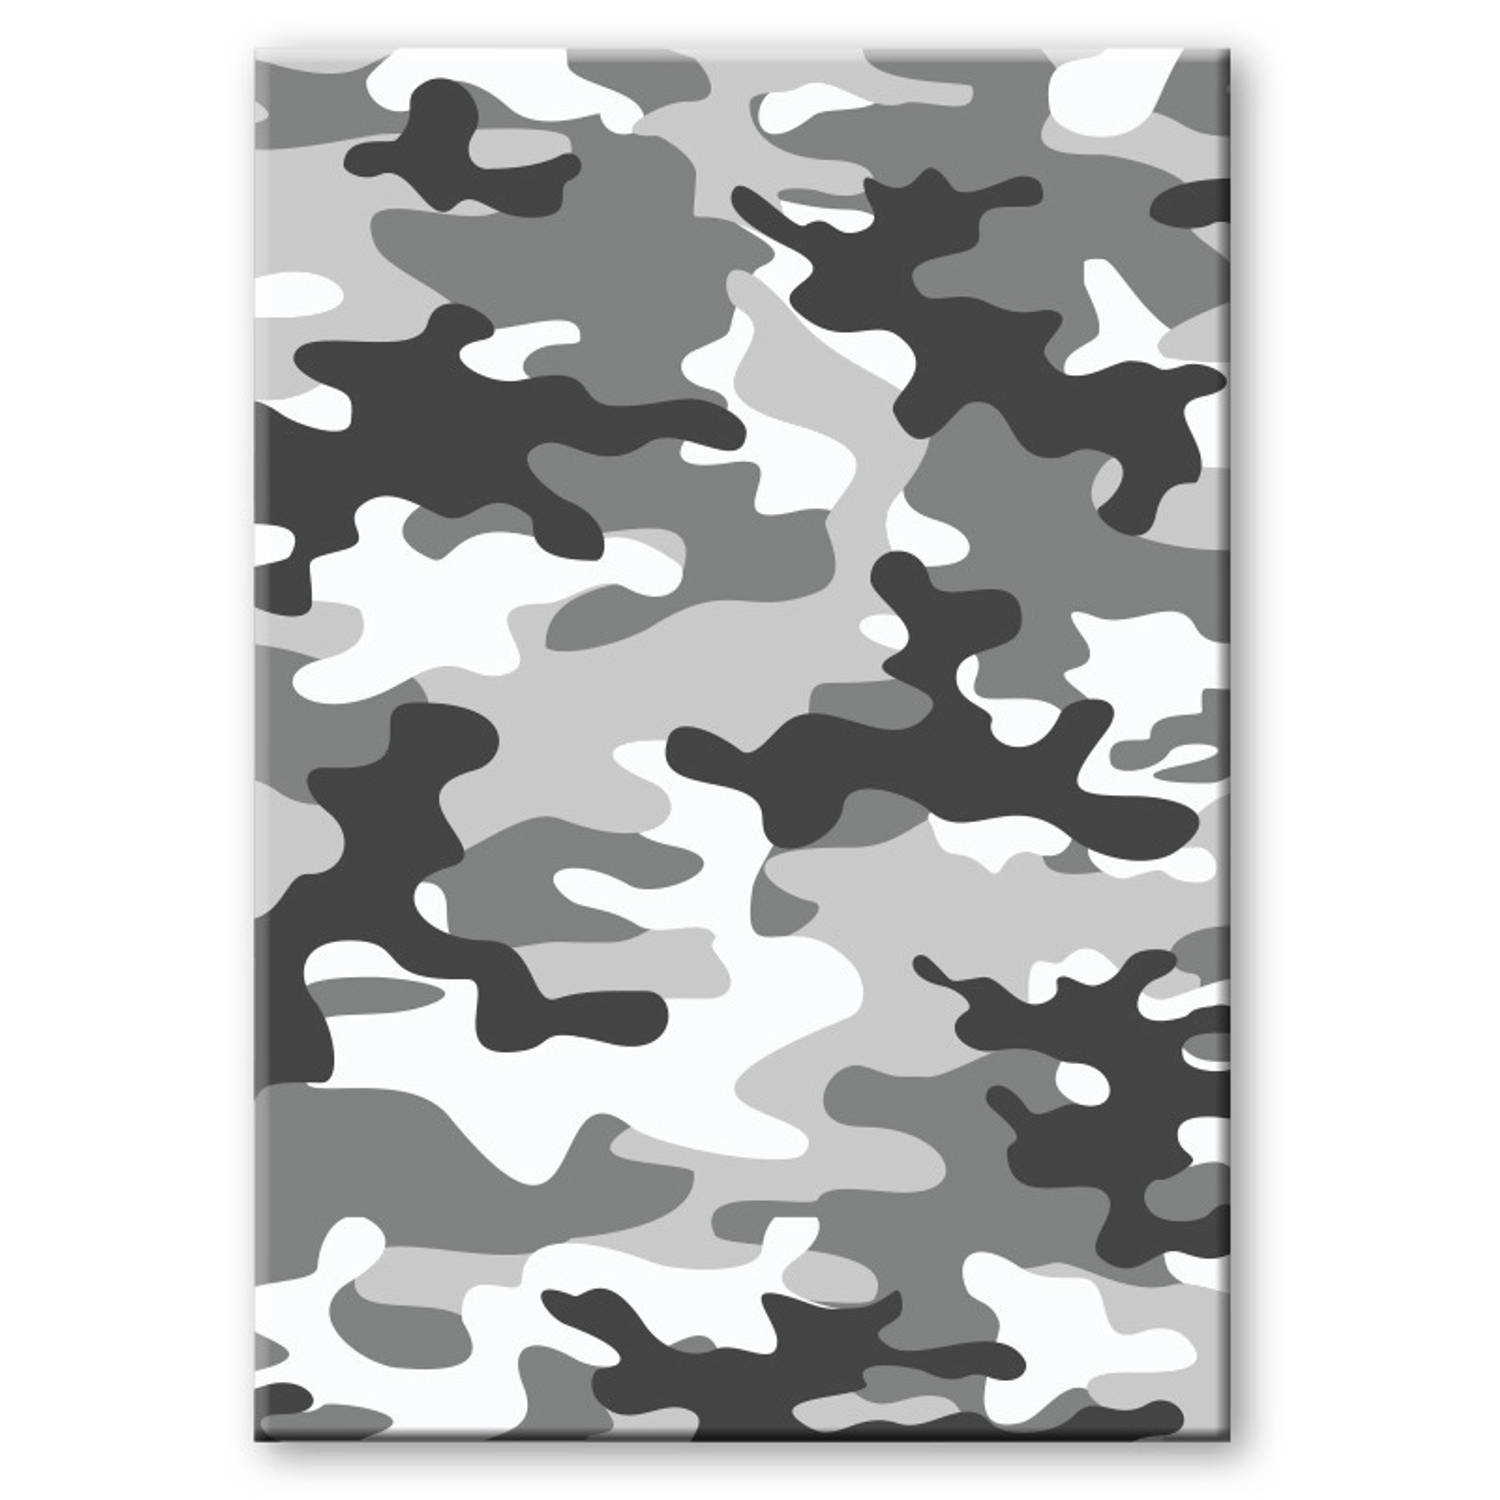 Camouflage/legerprint luxe schrift/notitieboek grijs gelinieerd A5 formaat - Notitieboek